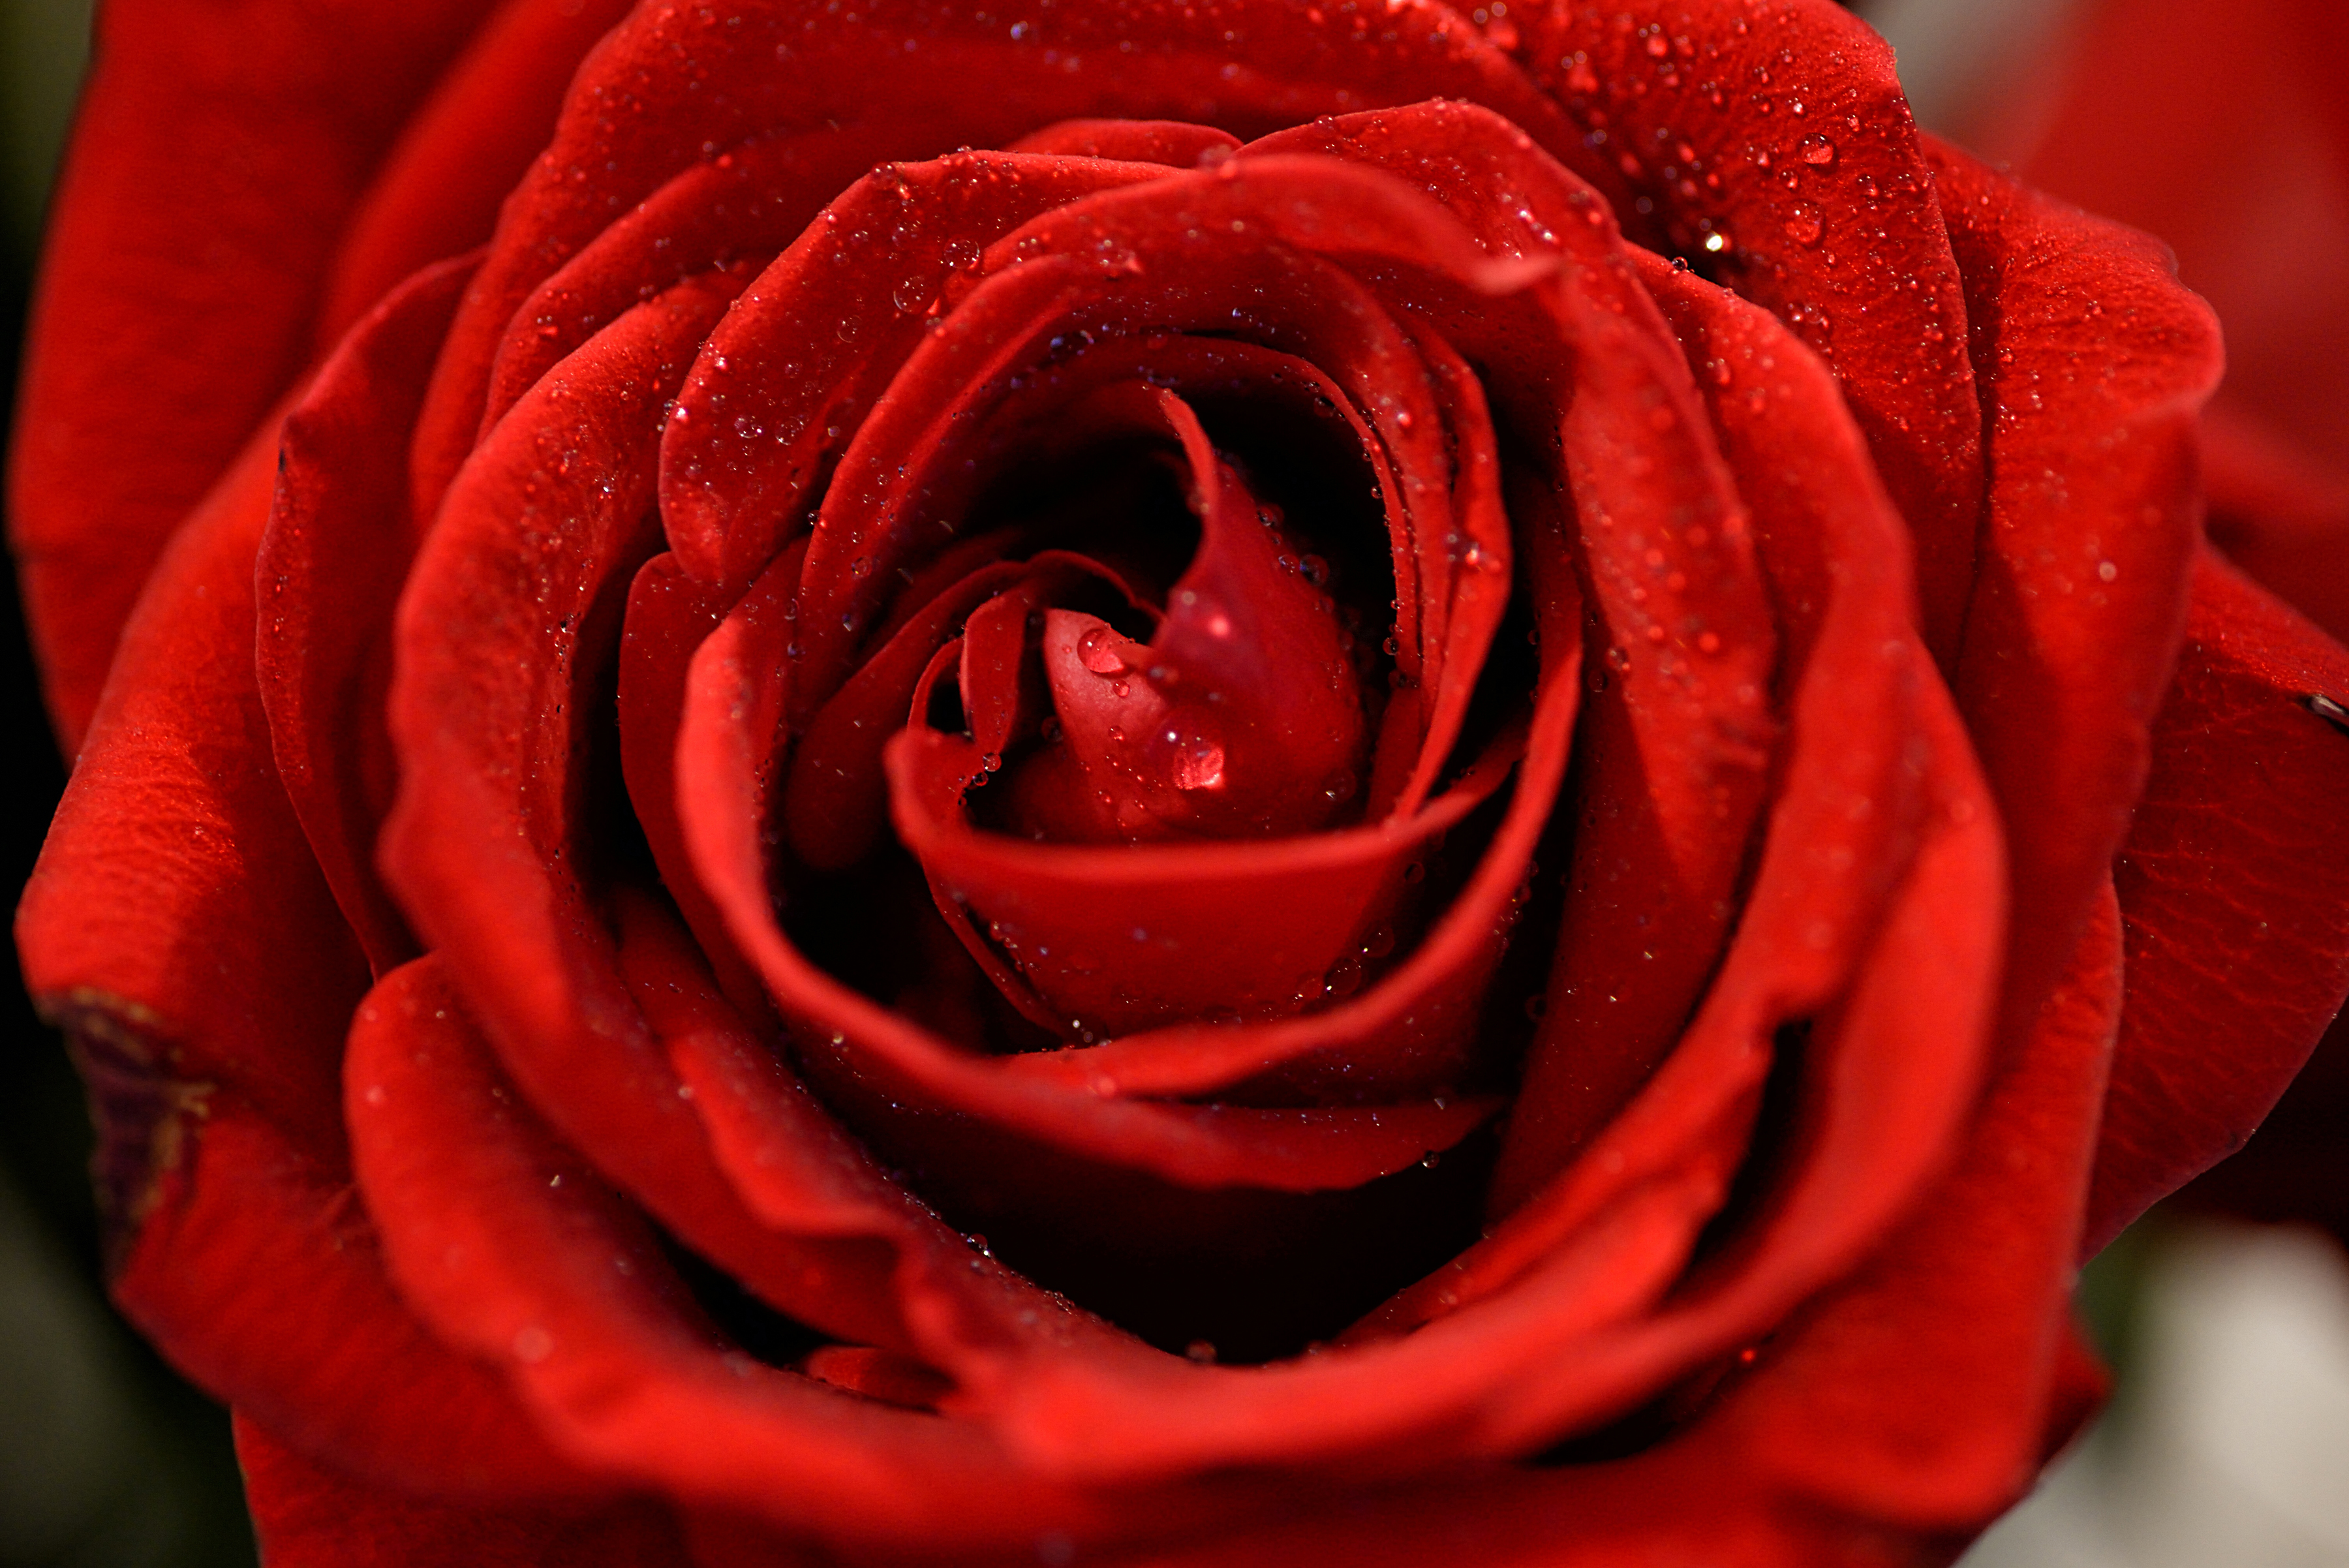 Красный гудеть. Ред ред Роуз. Бутон красной розы. Красивые красные розы. Красный цветочек.